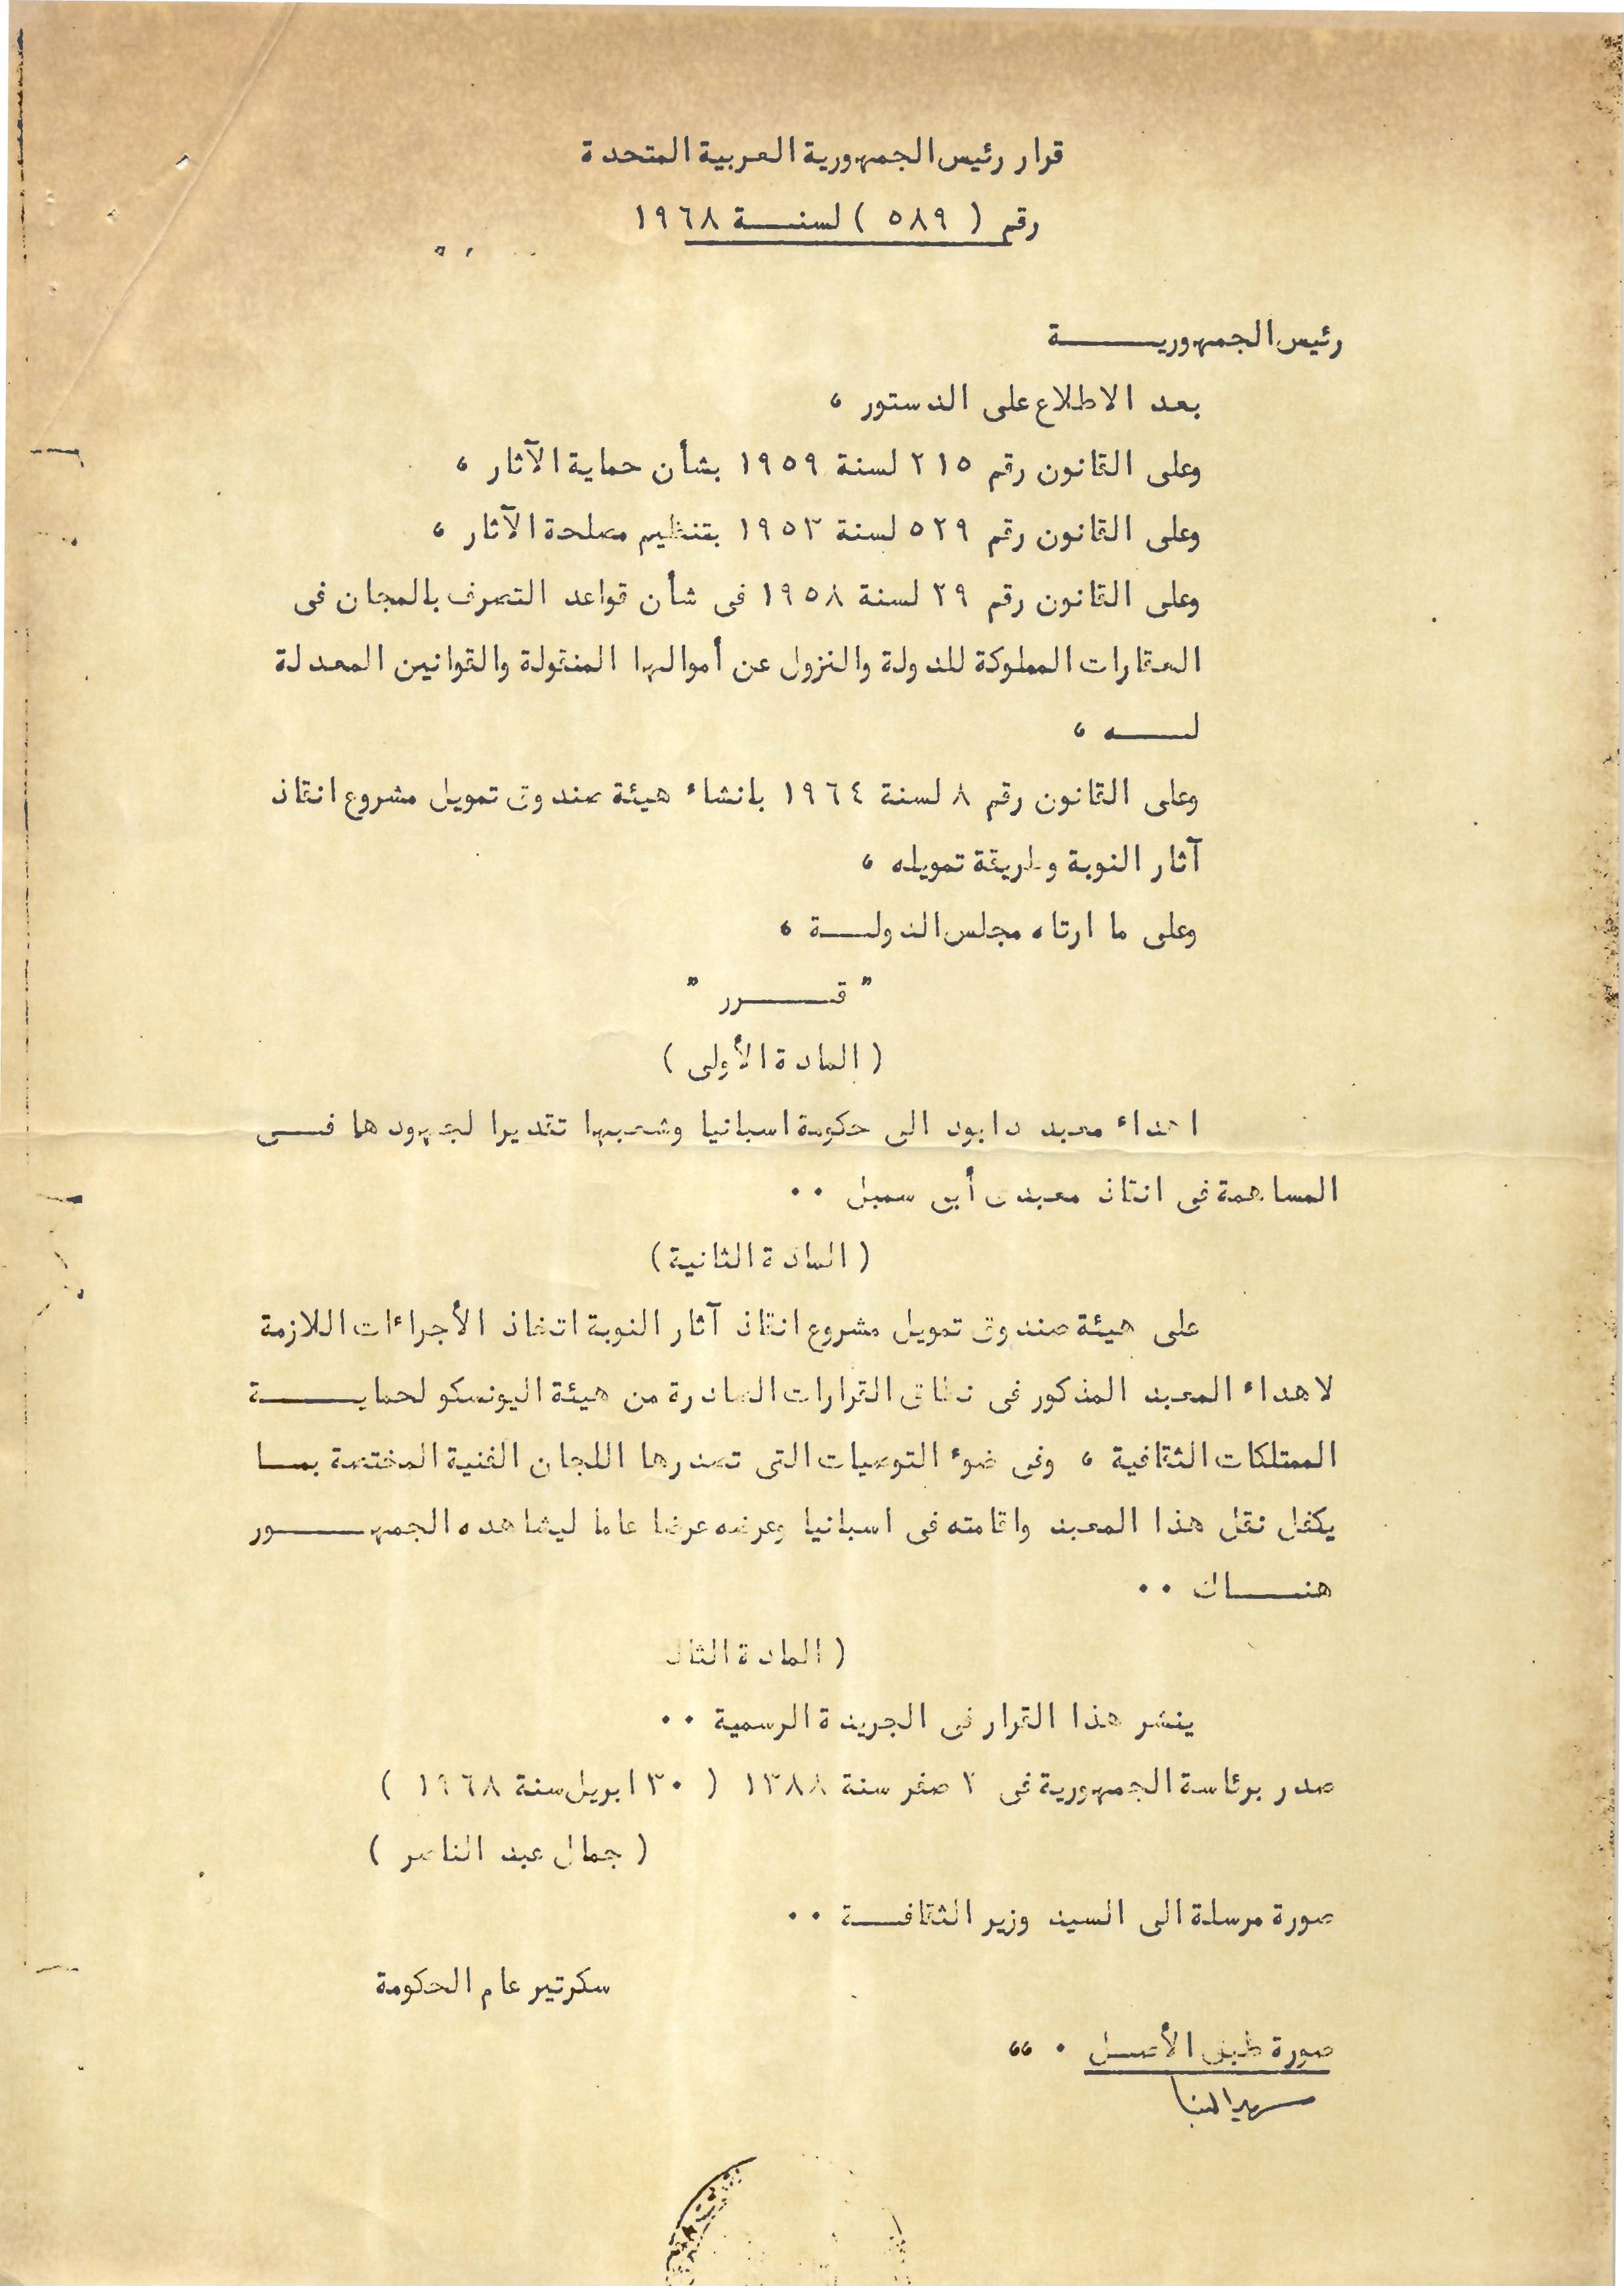 Decreto Presidente de la RAU Arabe